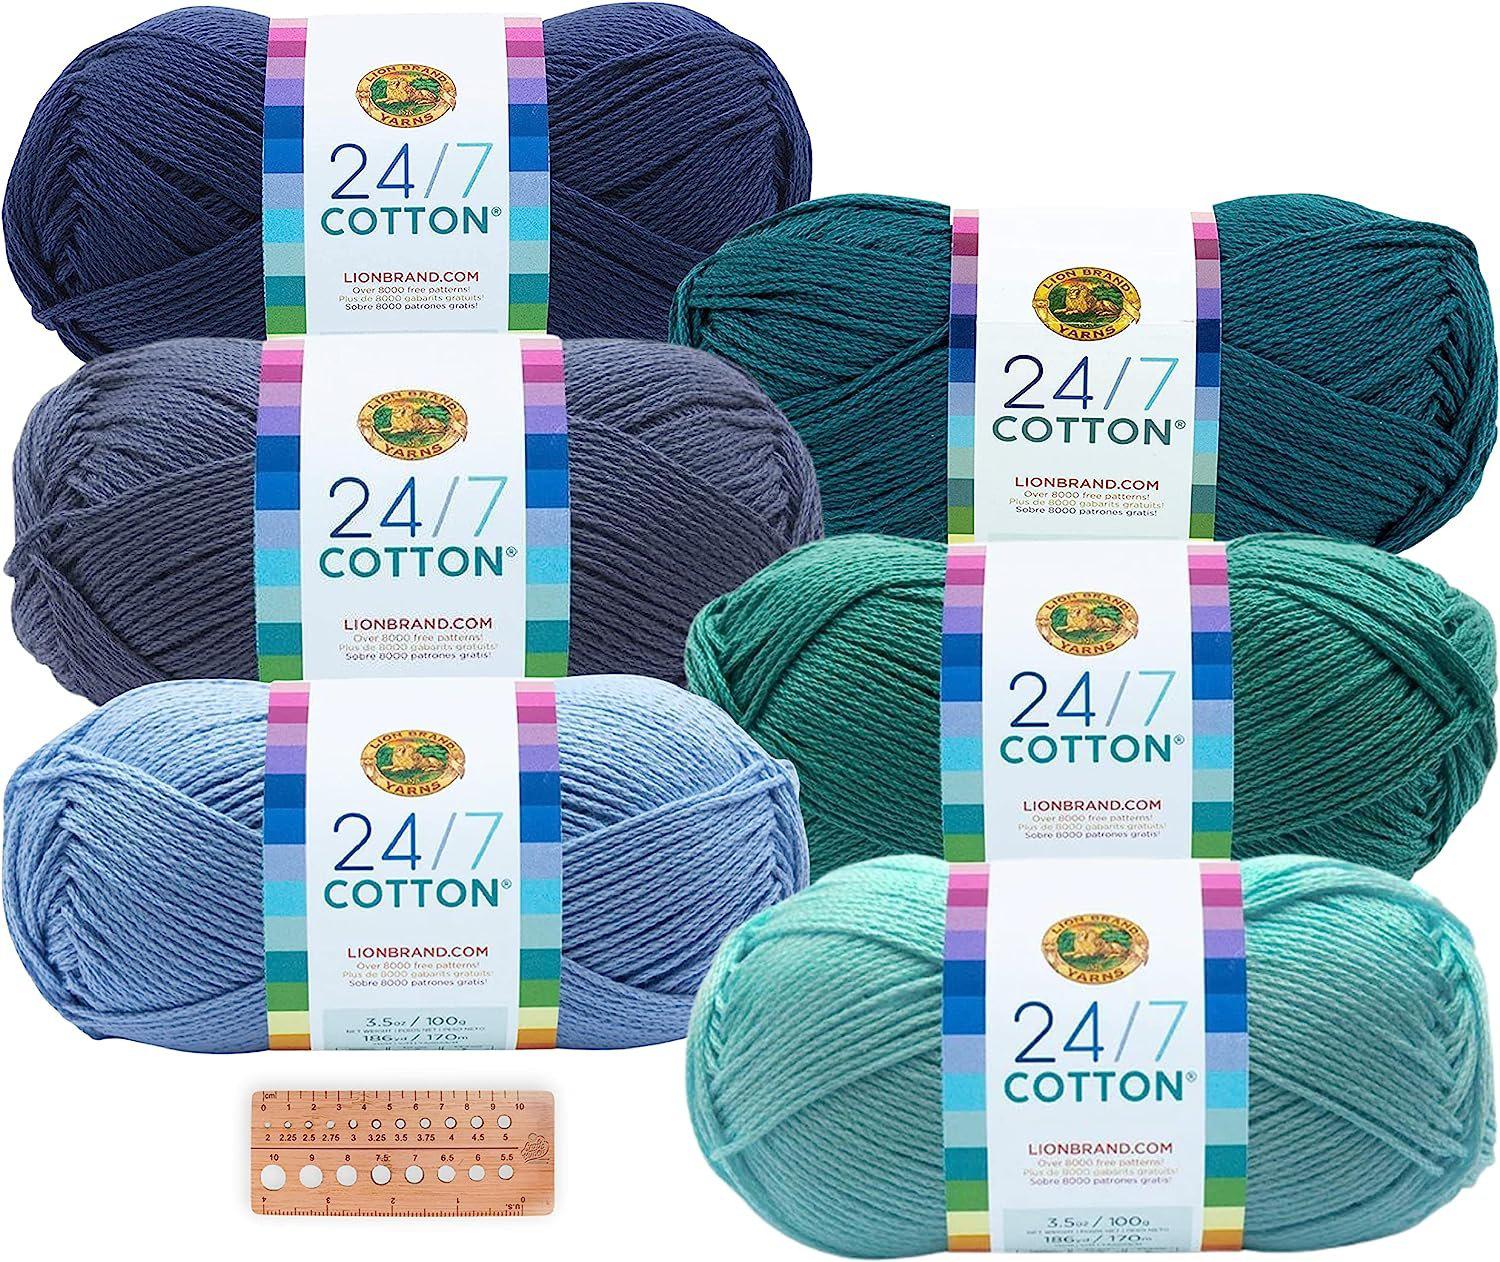 Lion Brand Yarn - 24/7 Cotton - 6 Skein Assortment (Ocean) – Craft Bunch